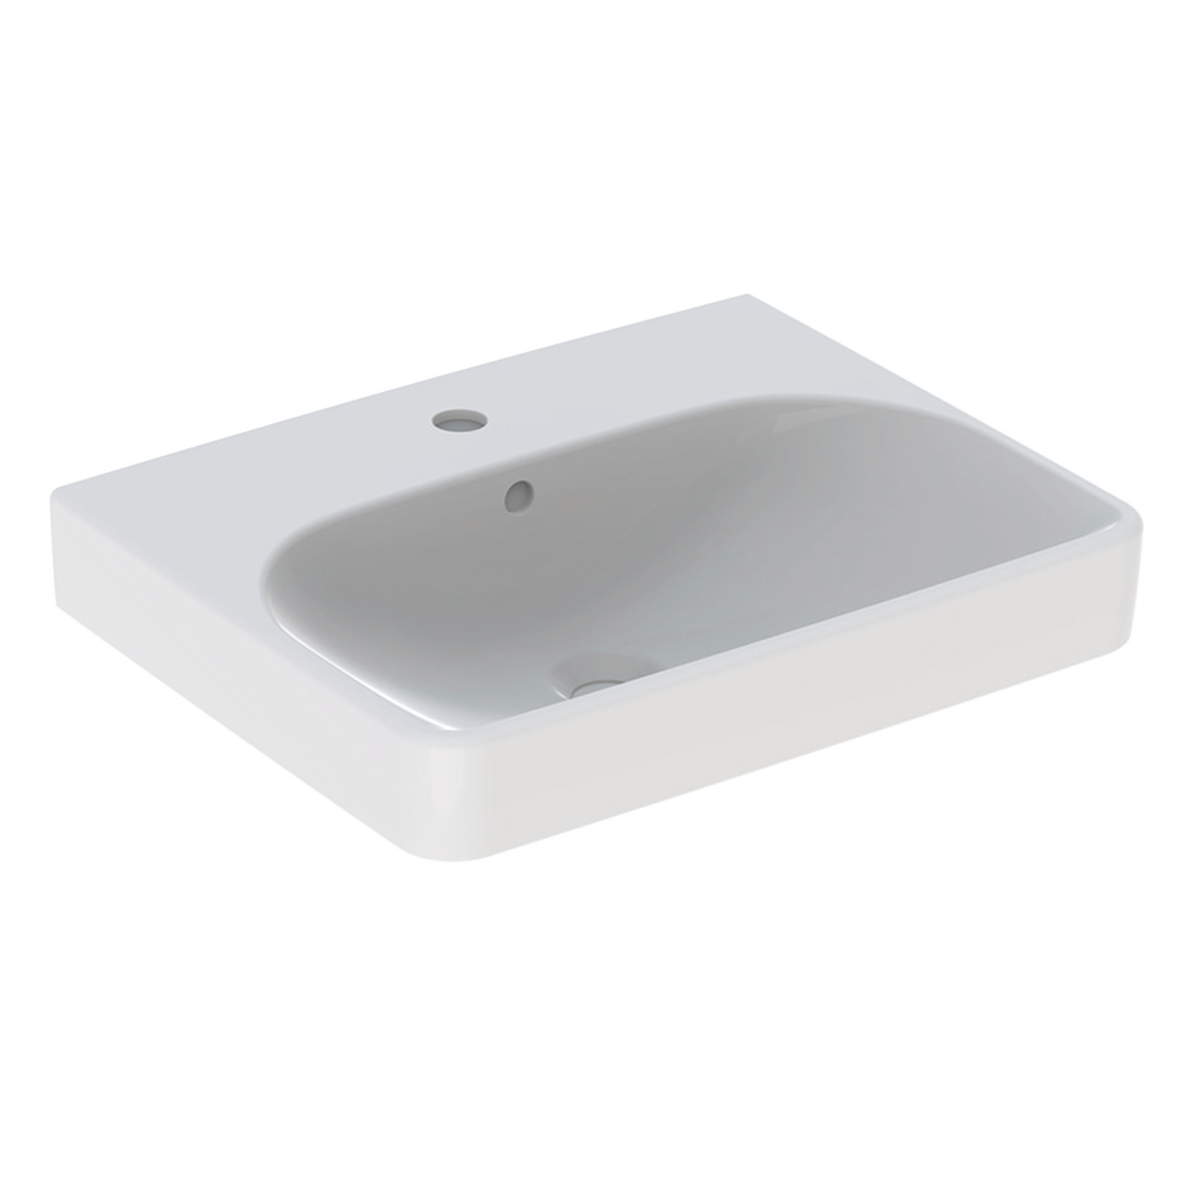 Smyle Square 550mm 1 tap hole washbasin